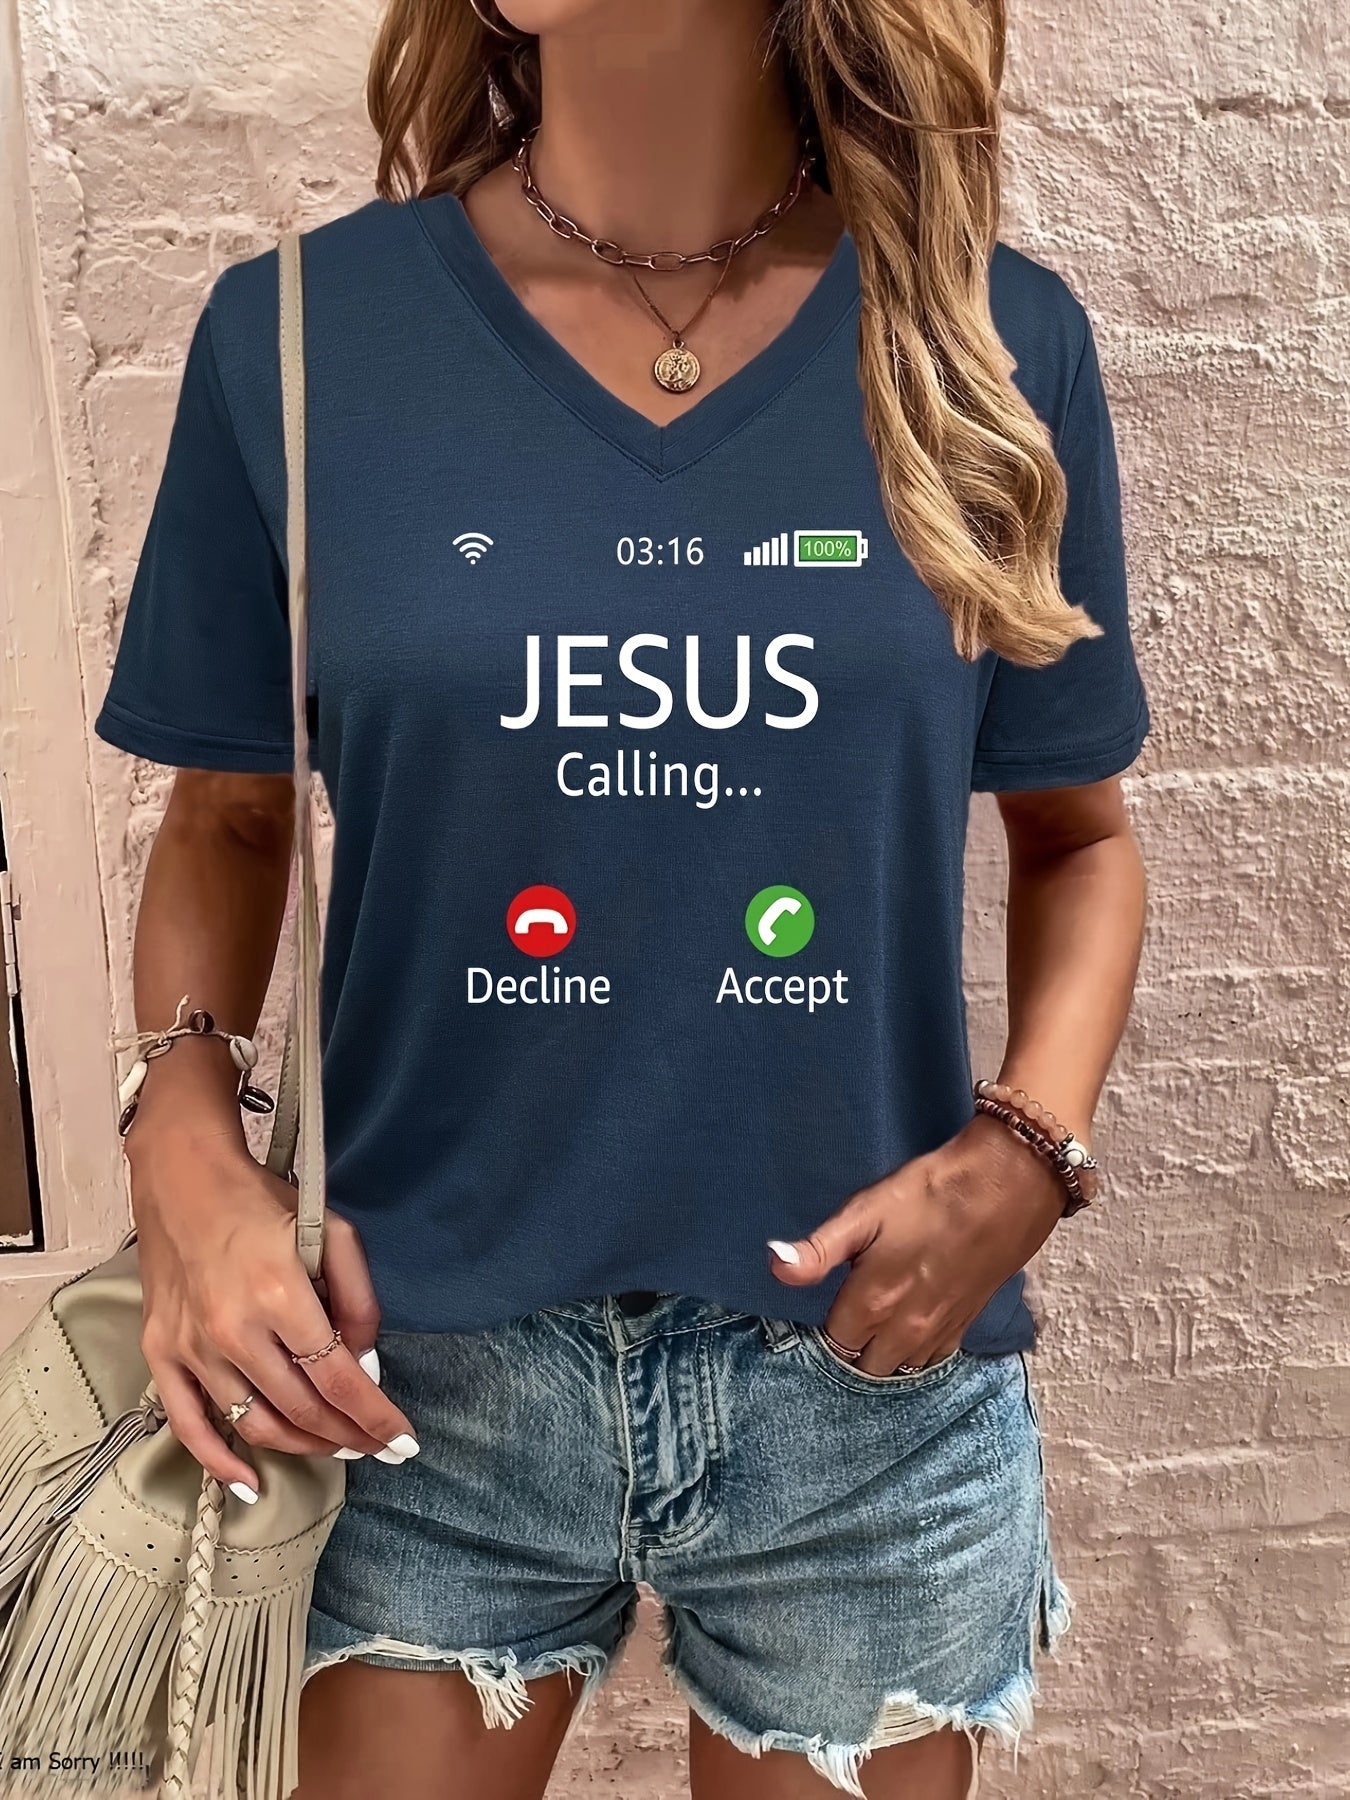 Jesus Is Calling Women's Christian V Neck T-Shirt claimedbygoddesigns